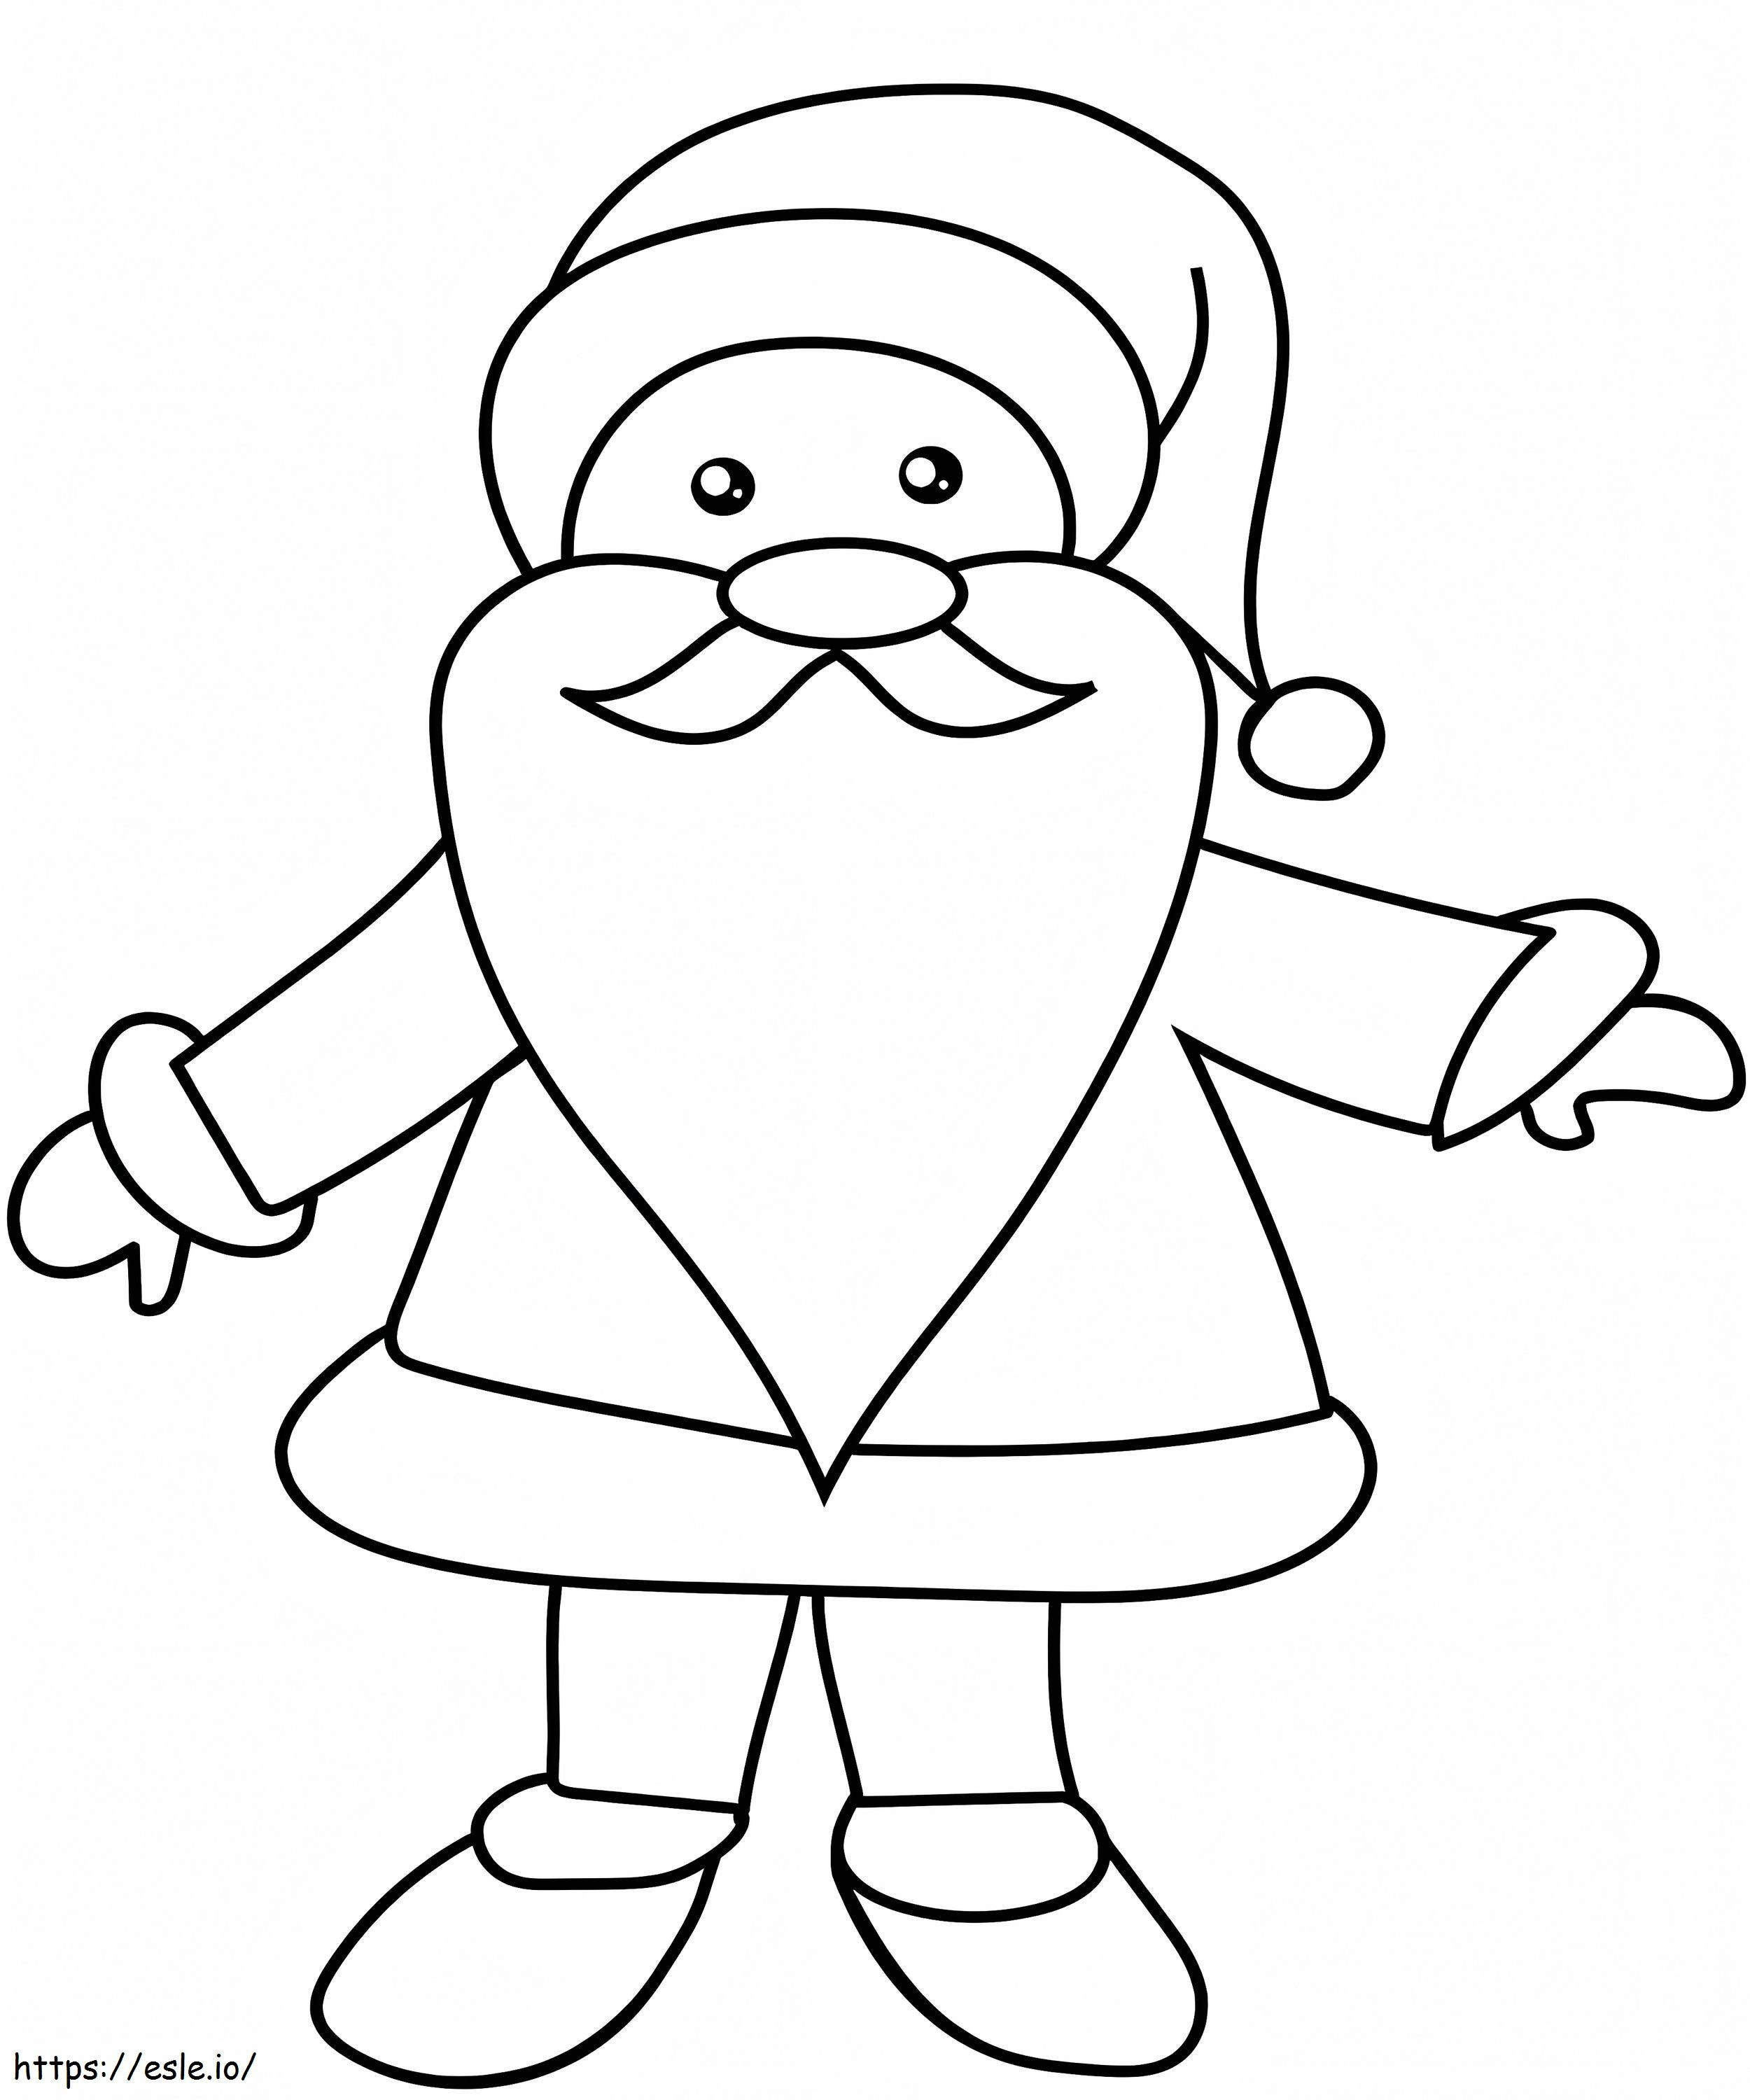 Simple Santa coloring page